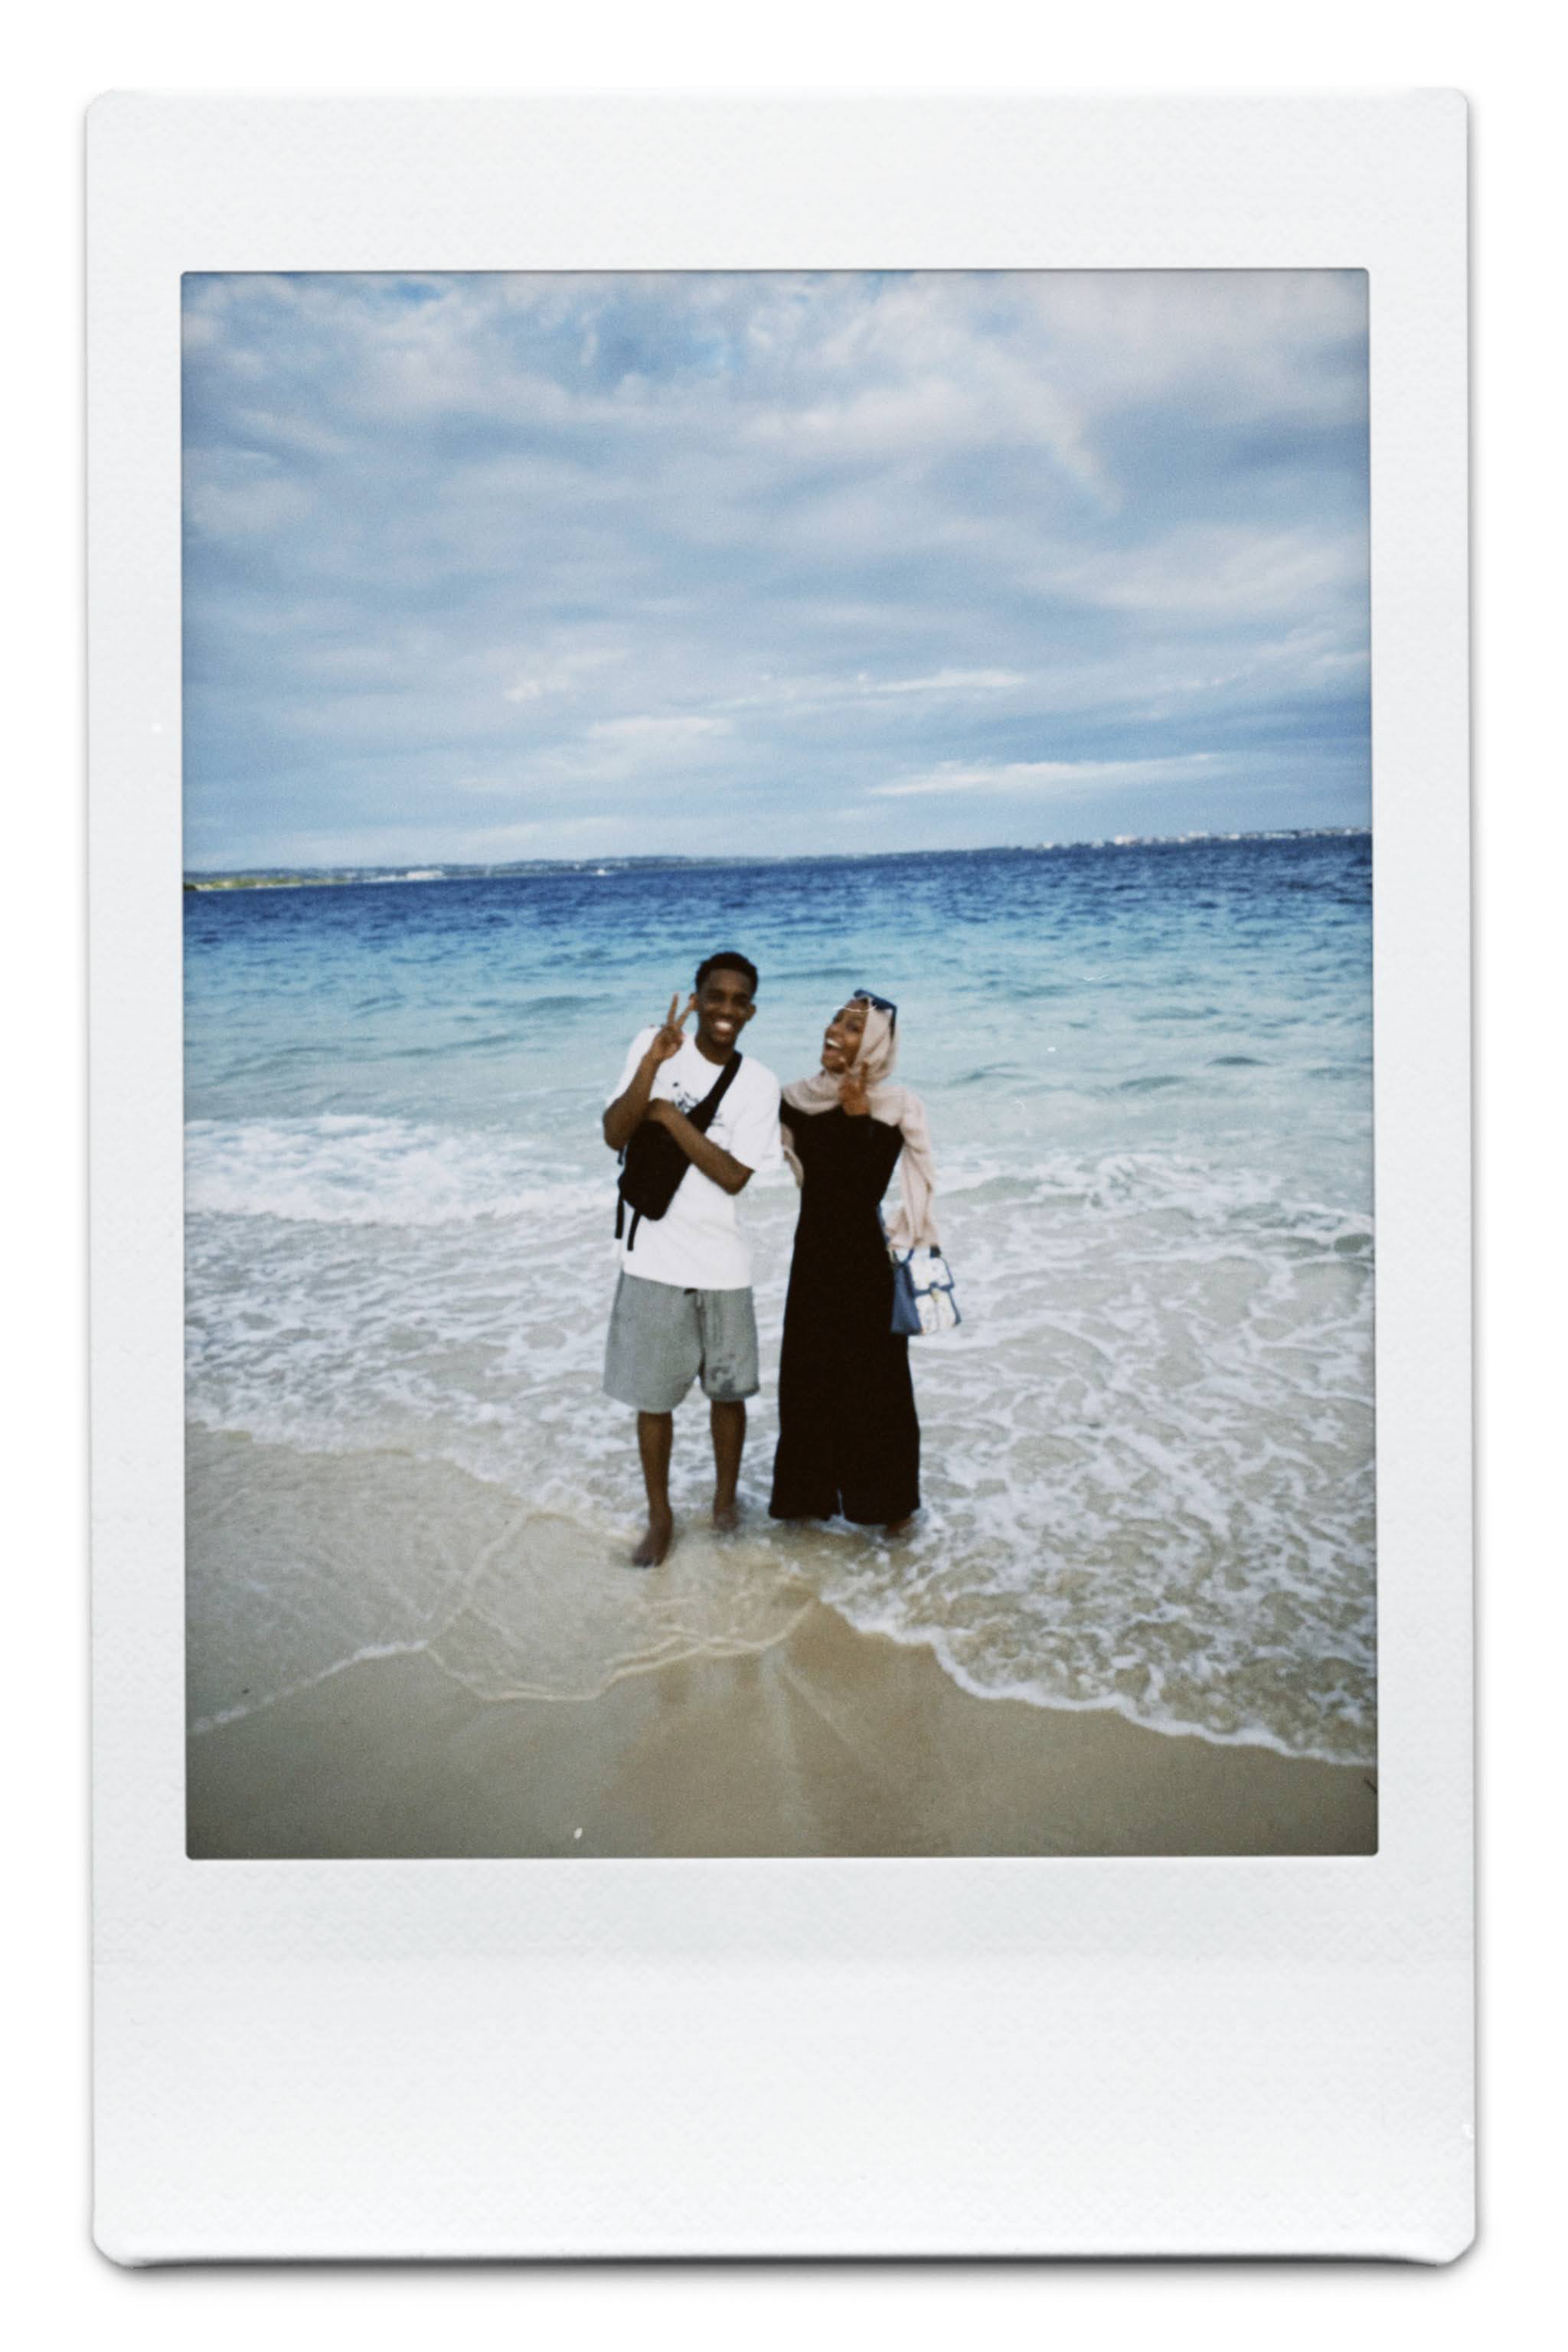 🇹🇿  Second month in Zanzibar